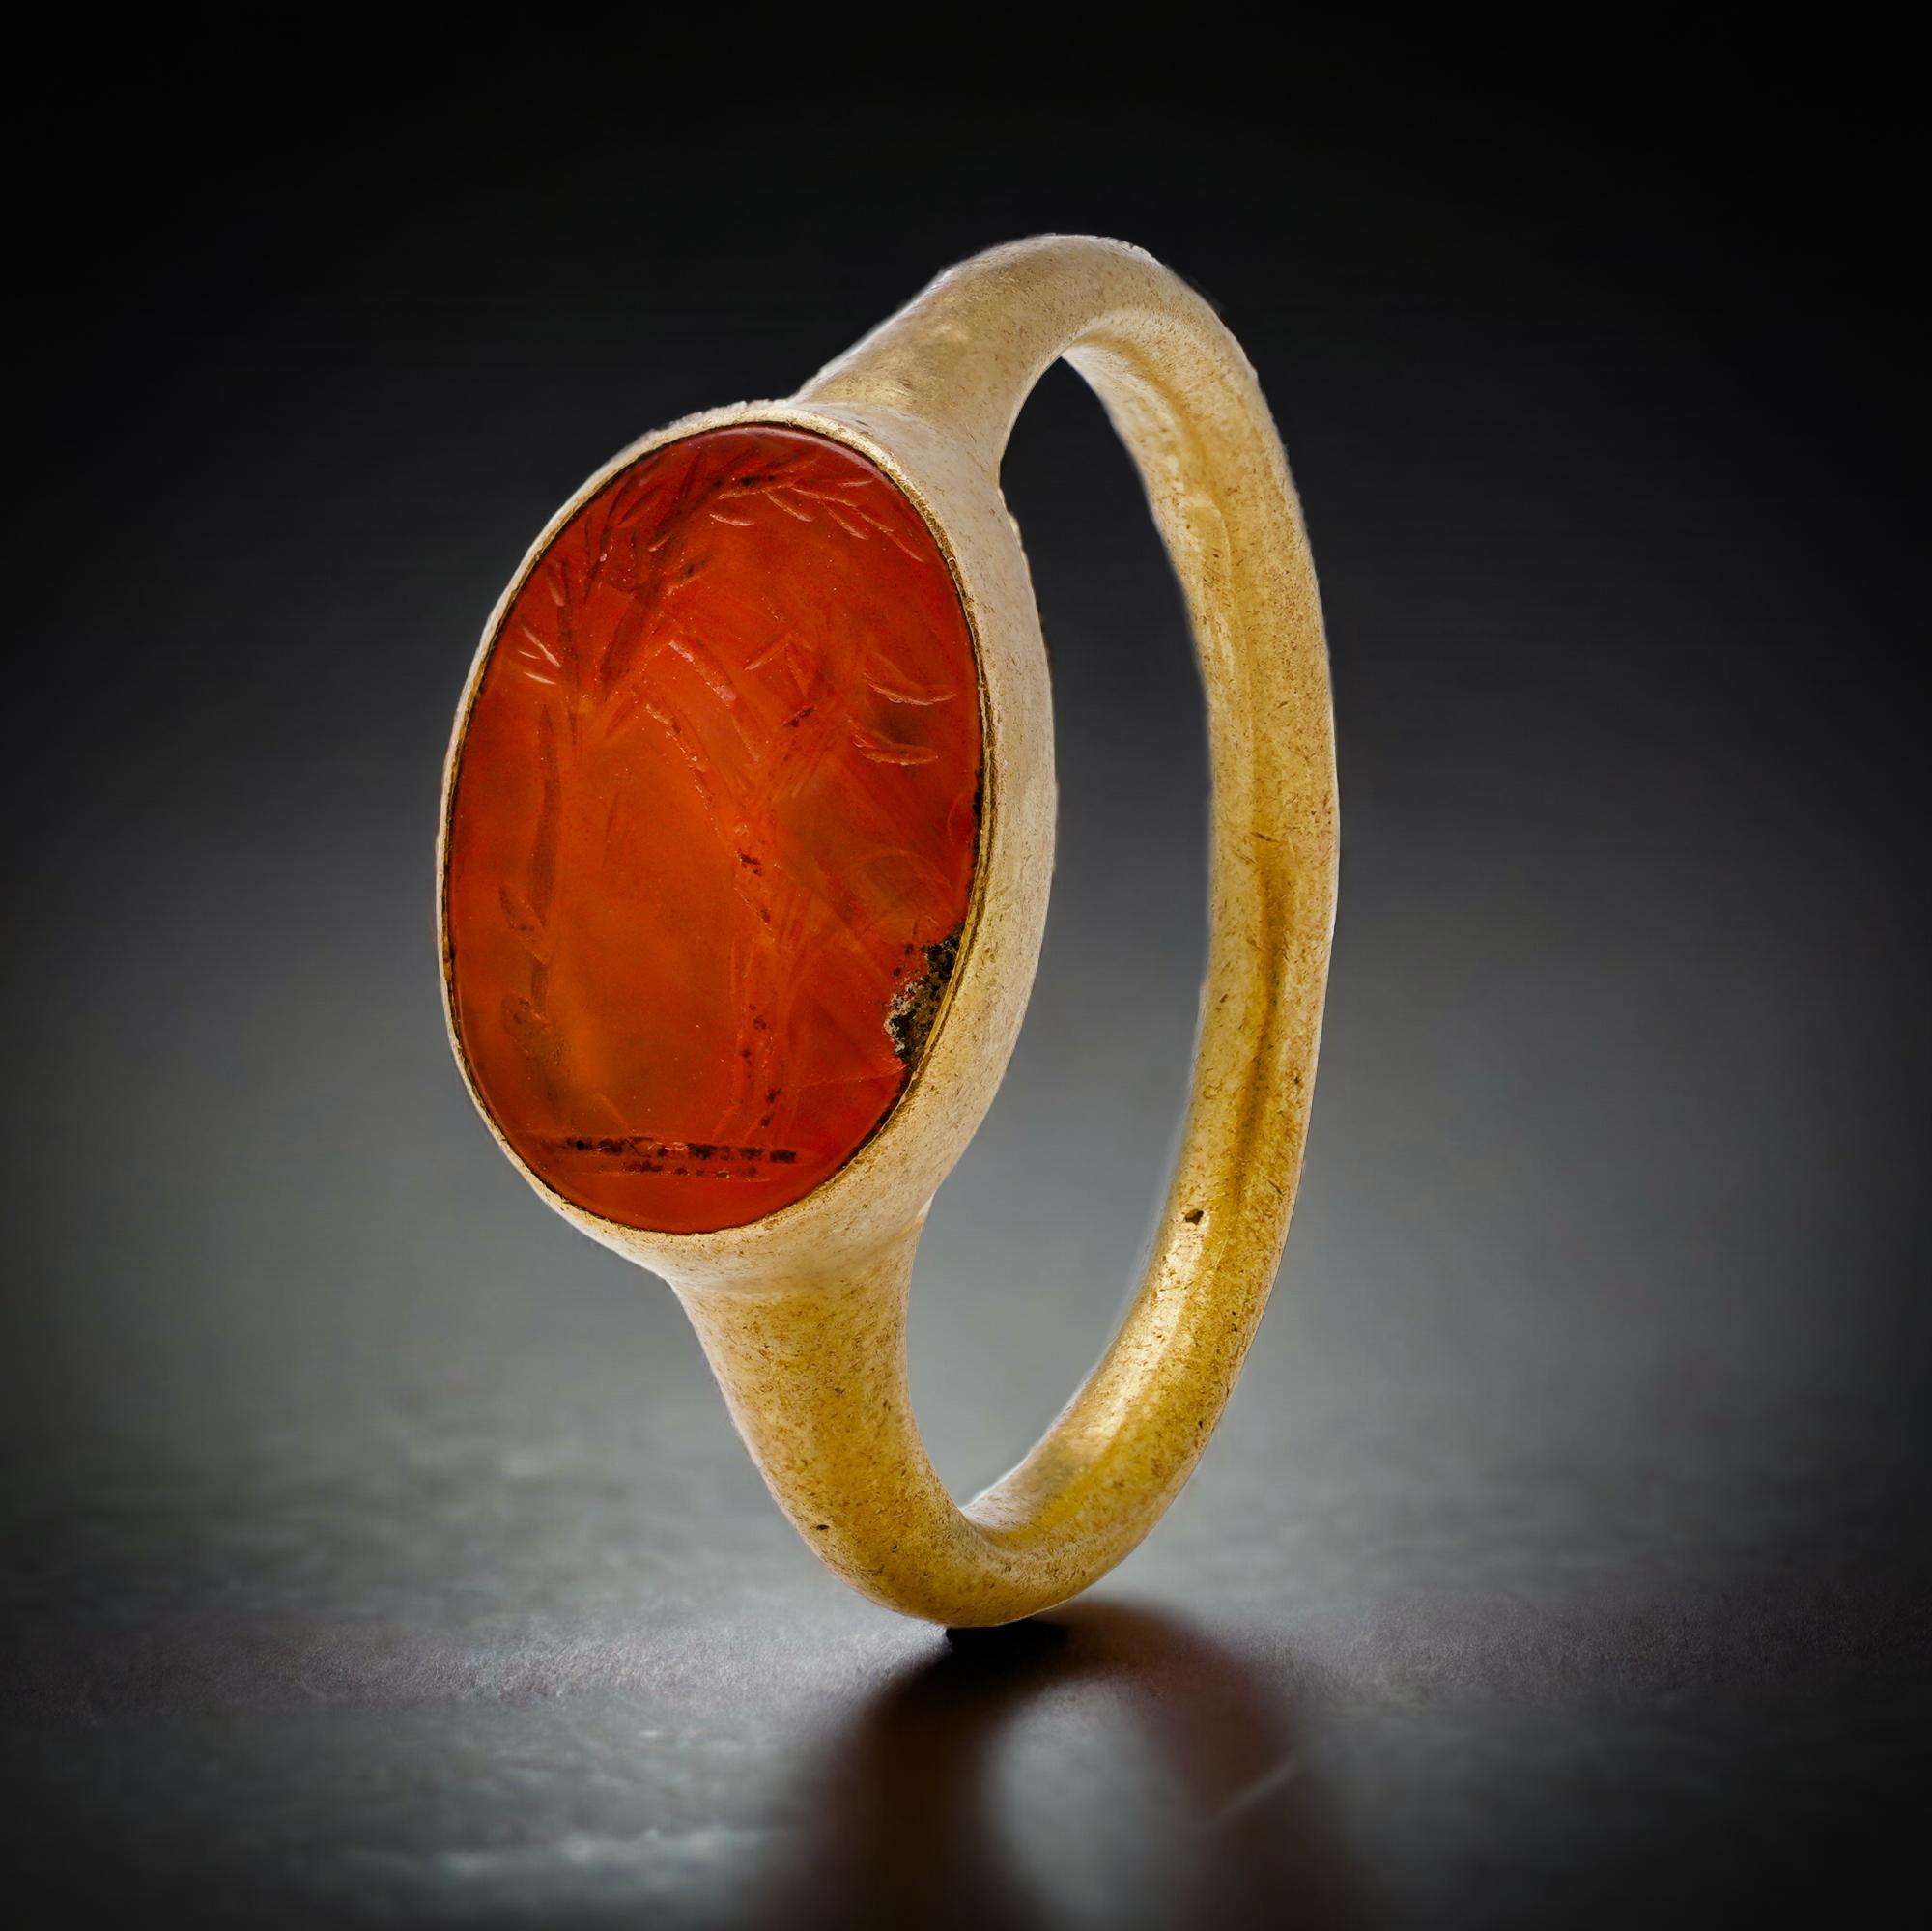 Römischer Ring aus 22-karätigem Gold mit Intarsien aus Ziegenkarneol.
CIRCA 100 - 300 nach Christus. 

Ein wunderschöner Karneolstein, in den eine Ziege eingraviert ist, die sich auf einer Palme aufbäumt, eingefasst in einen goldenen Ring aus einem